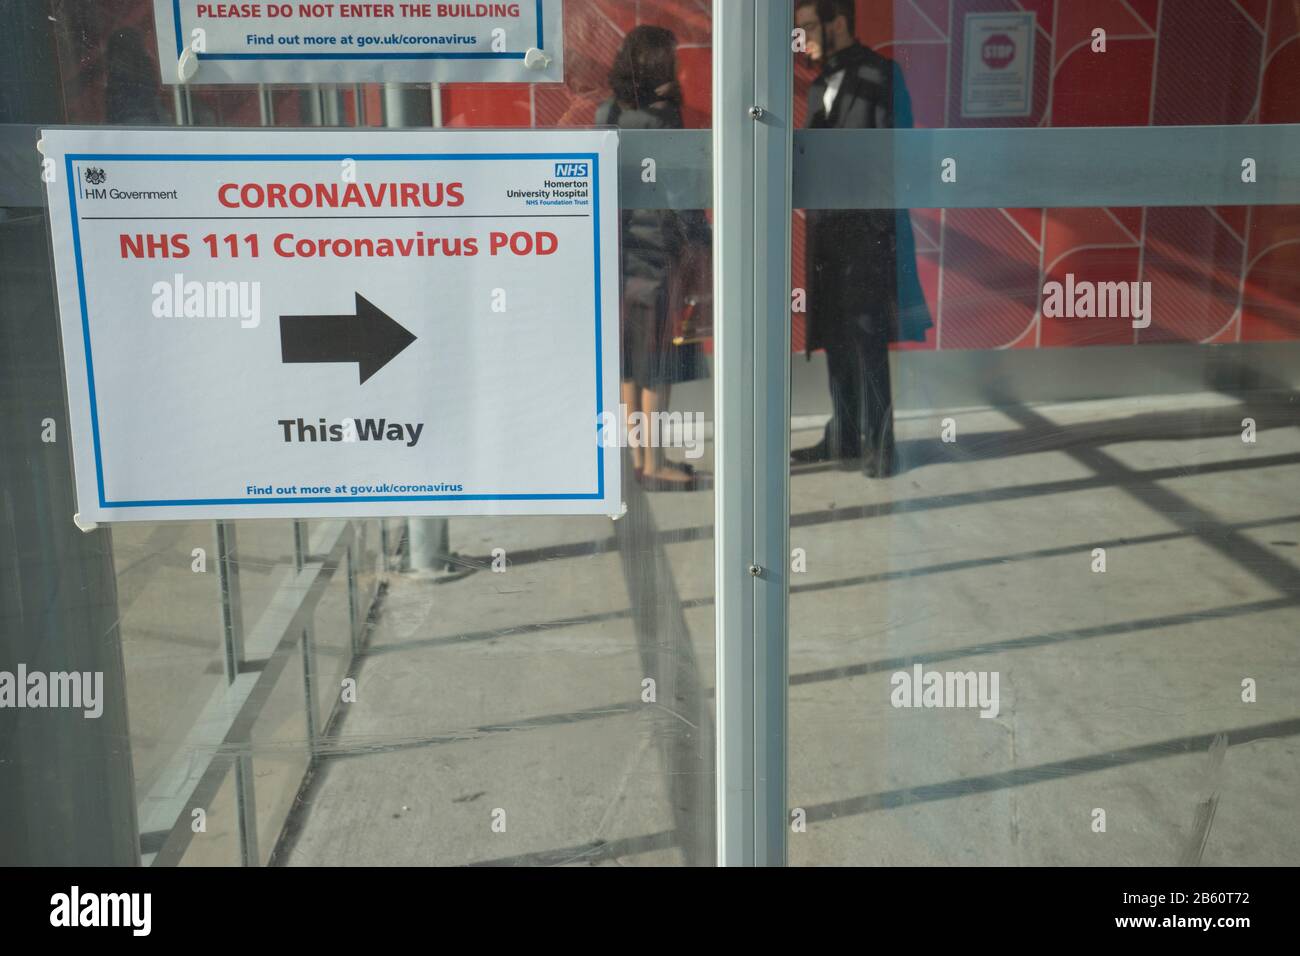 Les visiteurs marchent devant les panneaux indiquant Coronavirus pod à l'hôpital NHS de Homerton à Londres, en Angleterre, au Royaume-Uni Banque D'Images